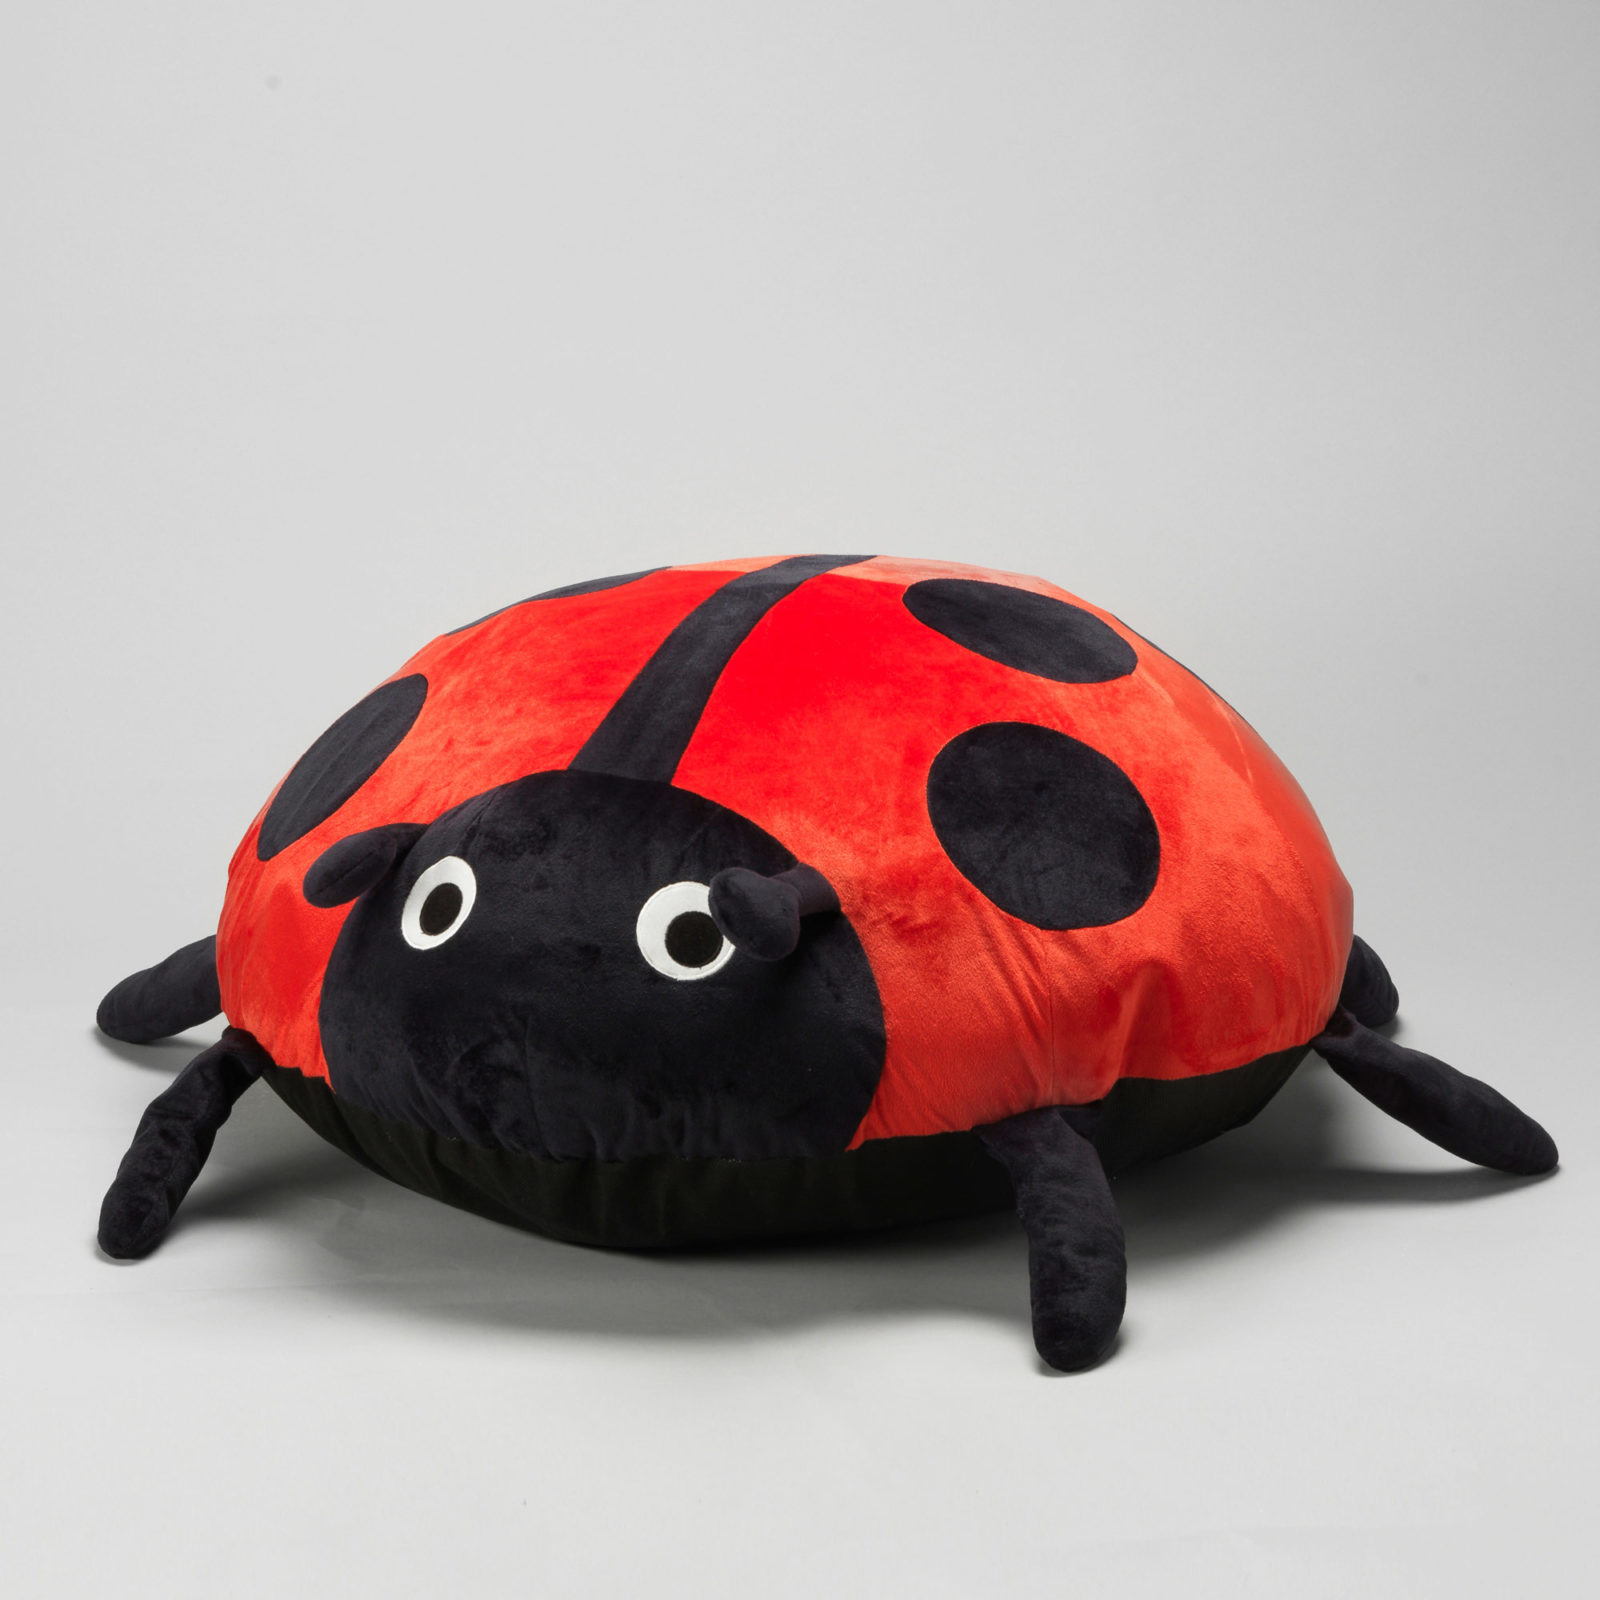 Almohada con forma de mariquita roja y negra y grandes ojos redondos.